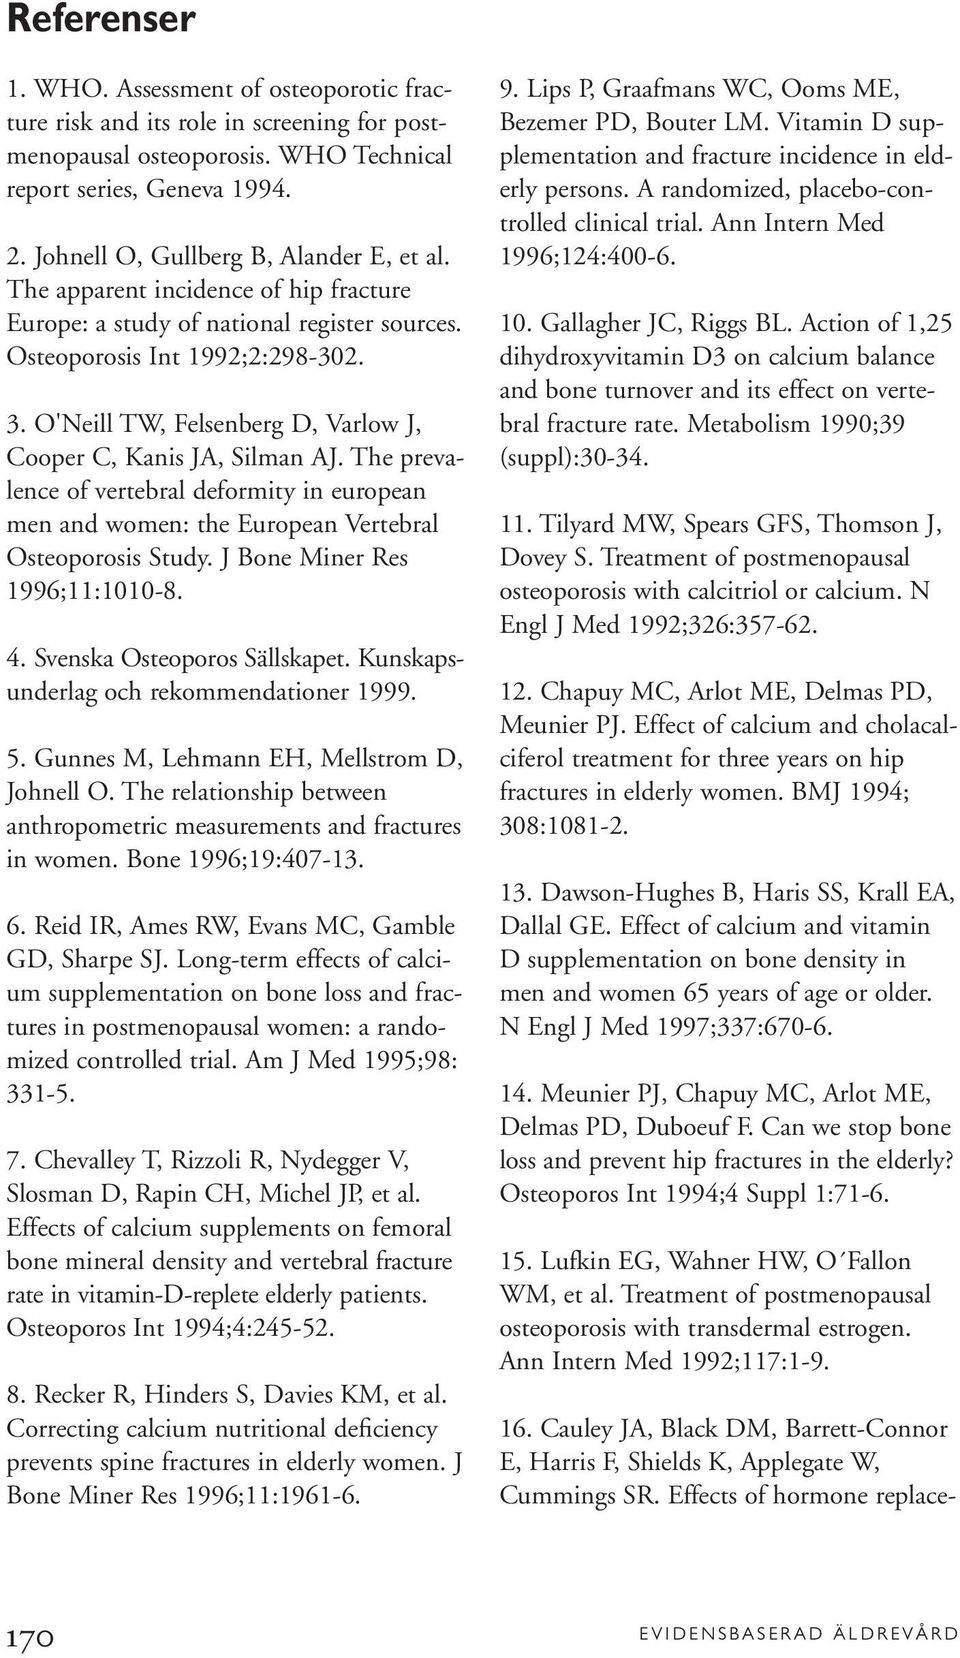 O'Neill TW, Felsenberg D, Varlow J, Cooper C, Kanis JA, Silman AJ. The prevalence of vertebral deformity in european men and women: the European Vertebral Osteoporosis Study.